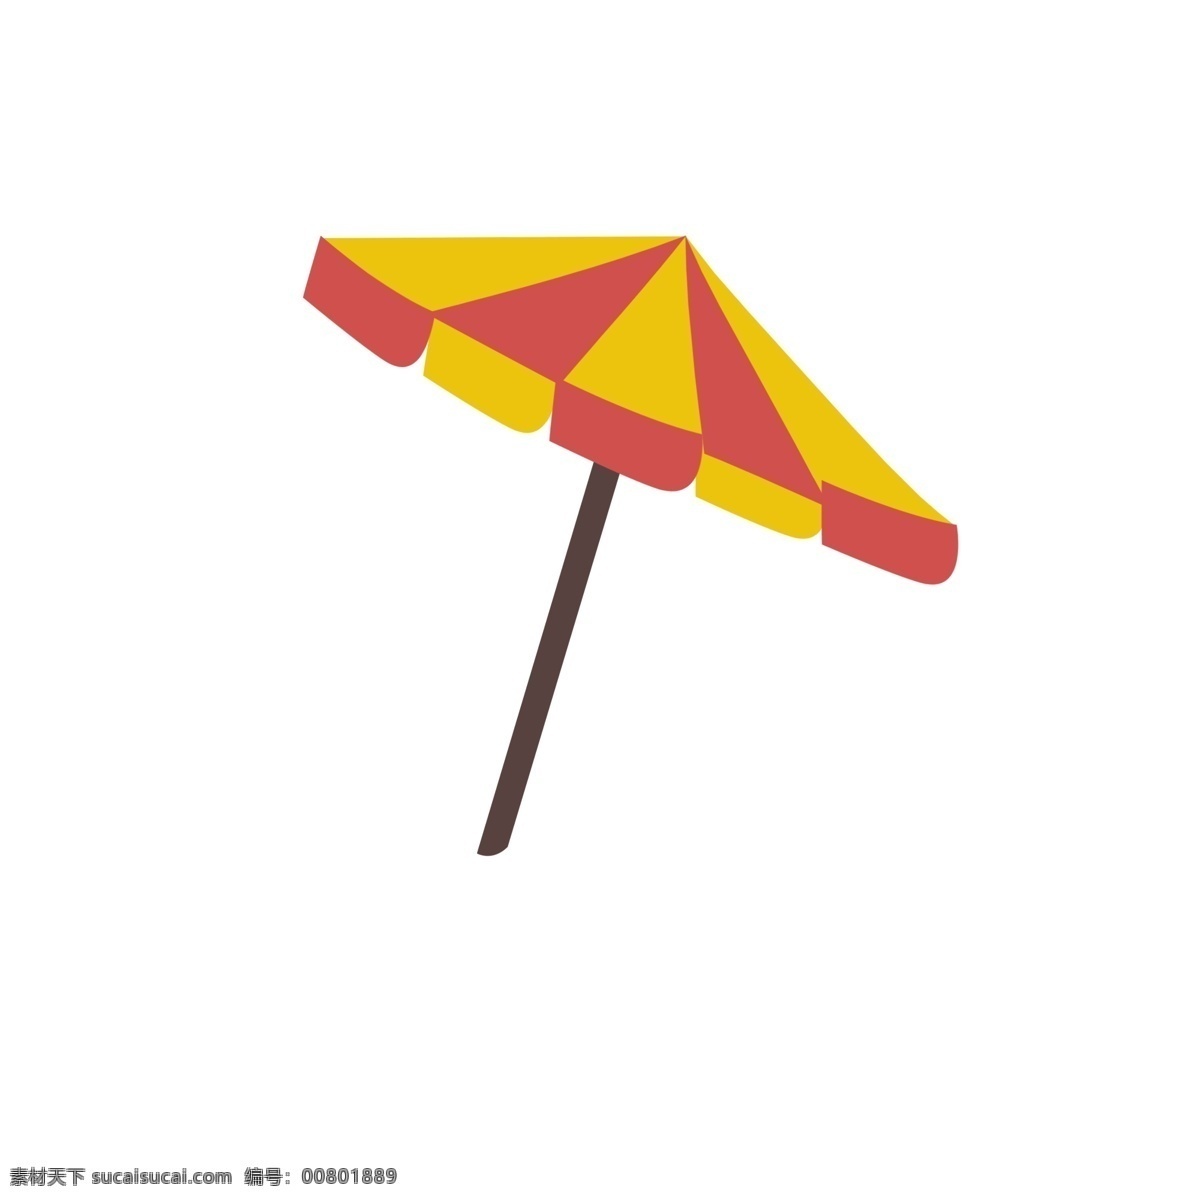 夏季 遮阳伞 沙滩 插画 元素 卡通 度假元素 伞